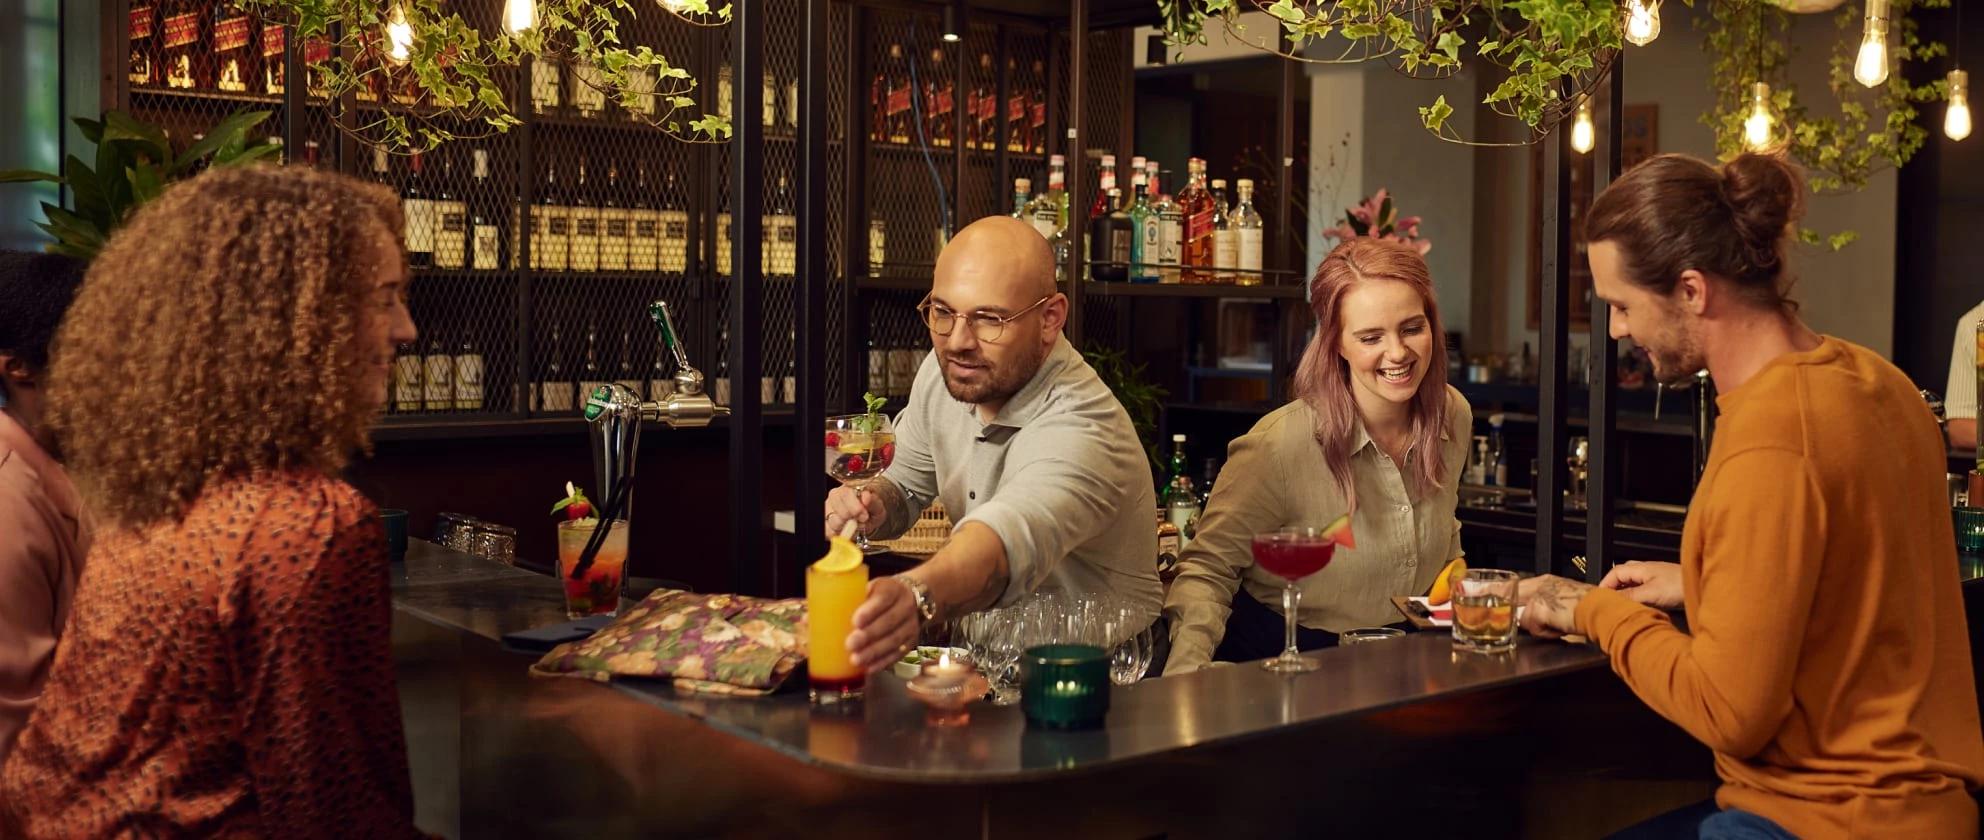 två bartenders som levererar drinkar till gäster